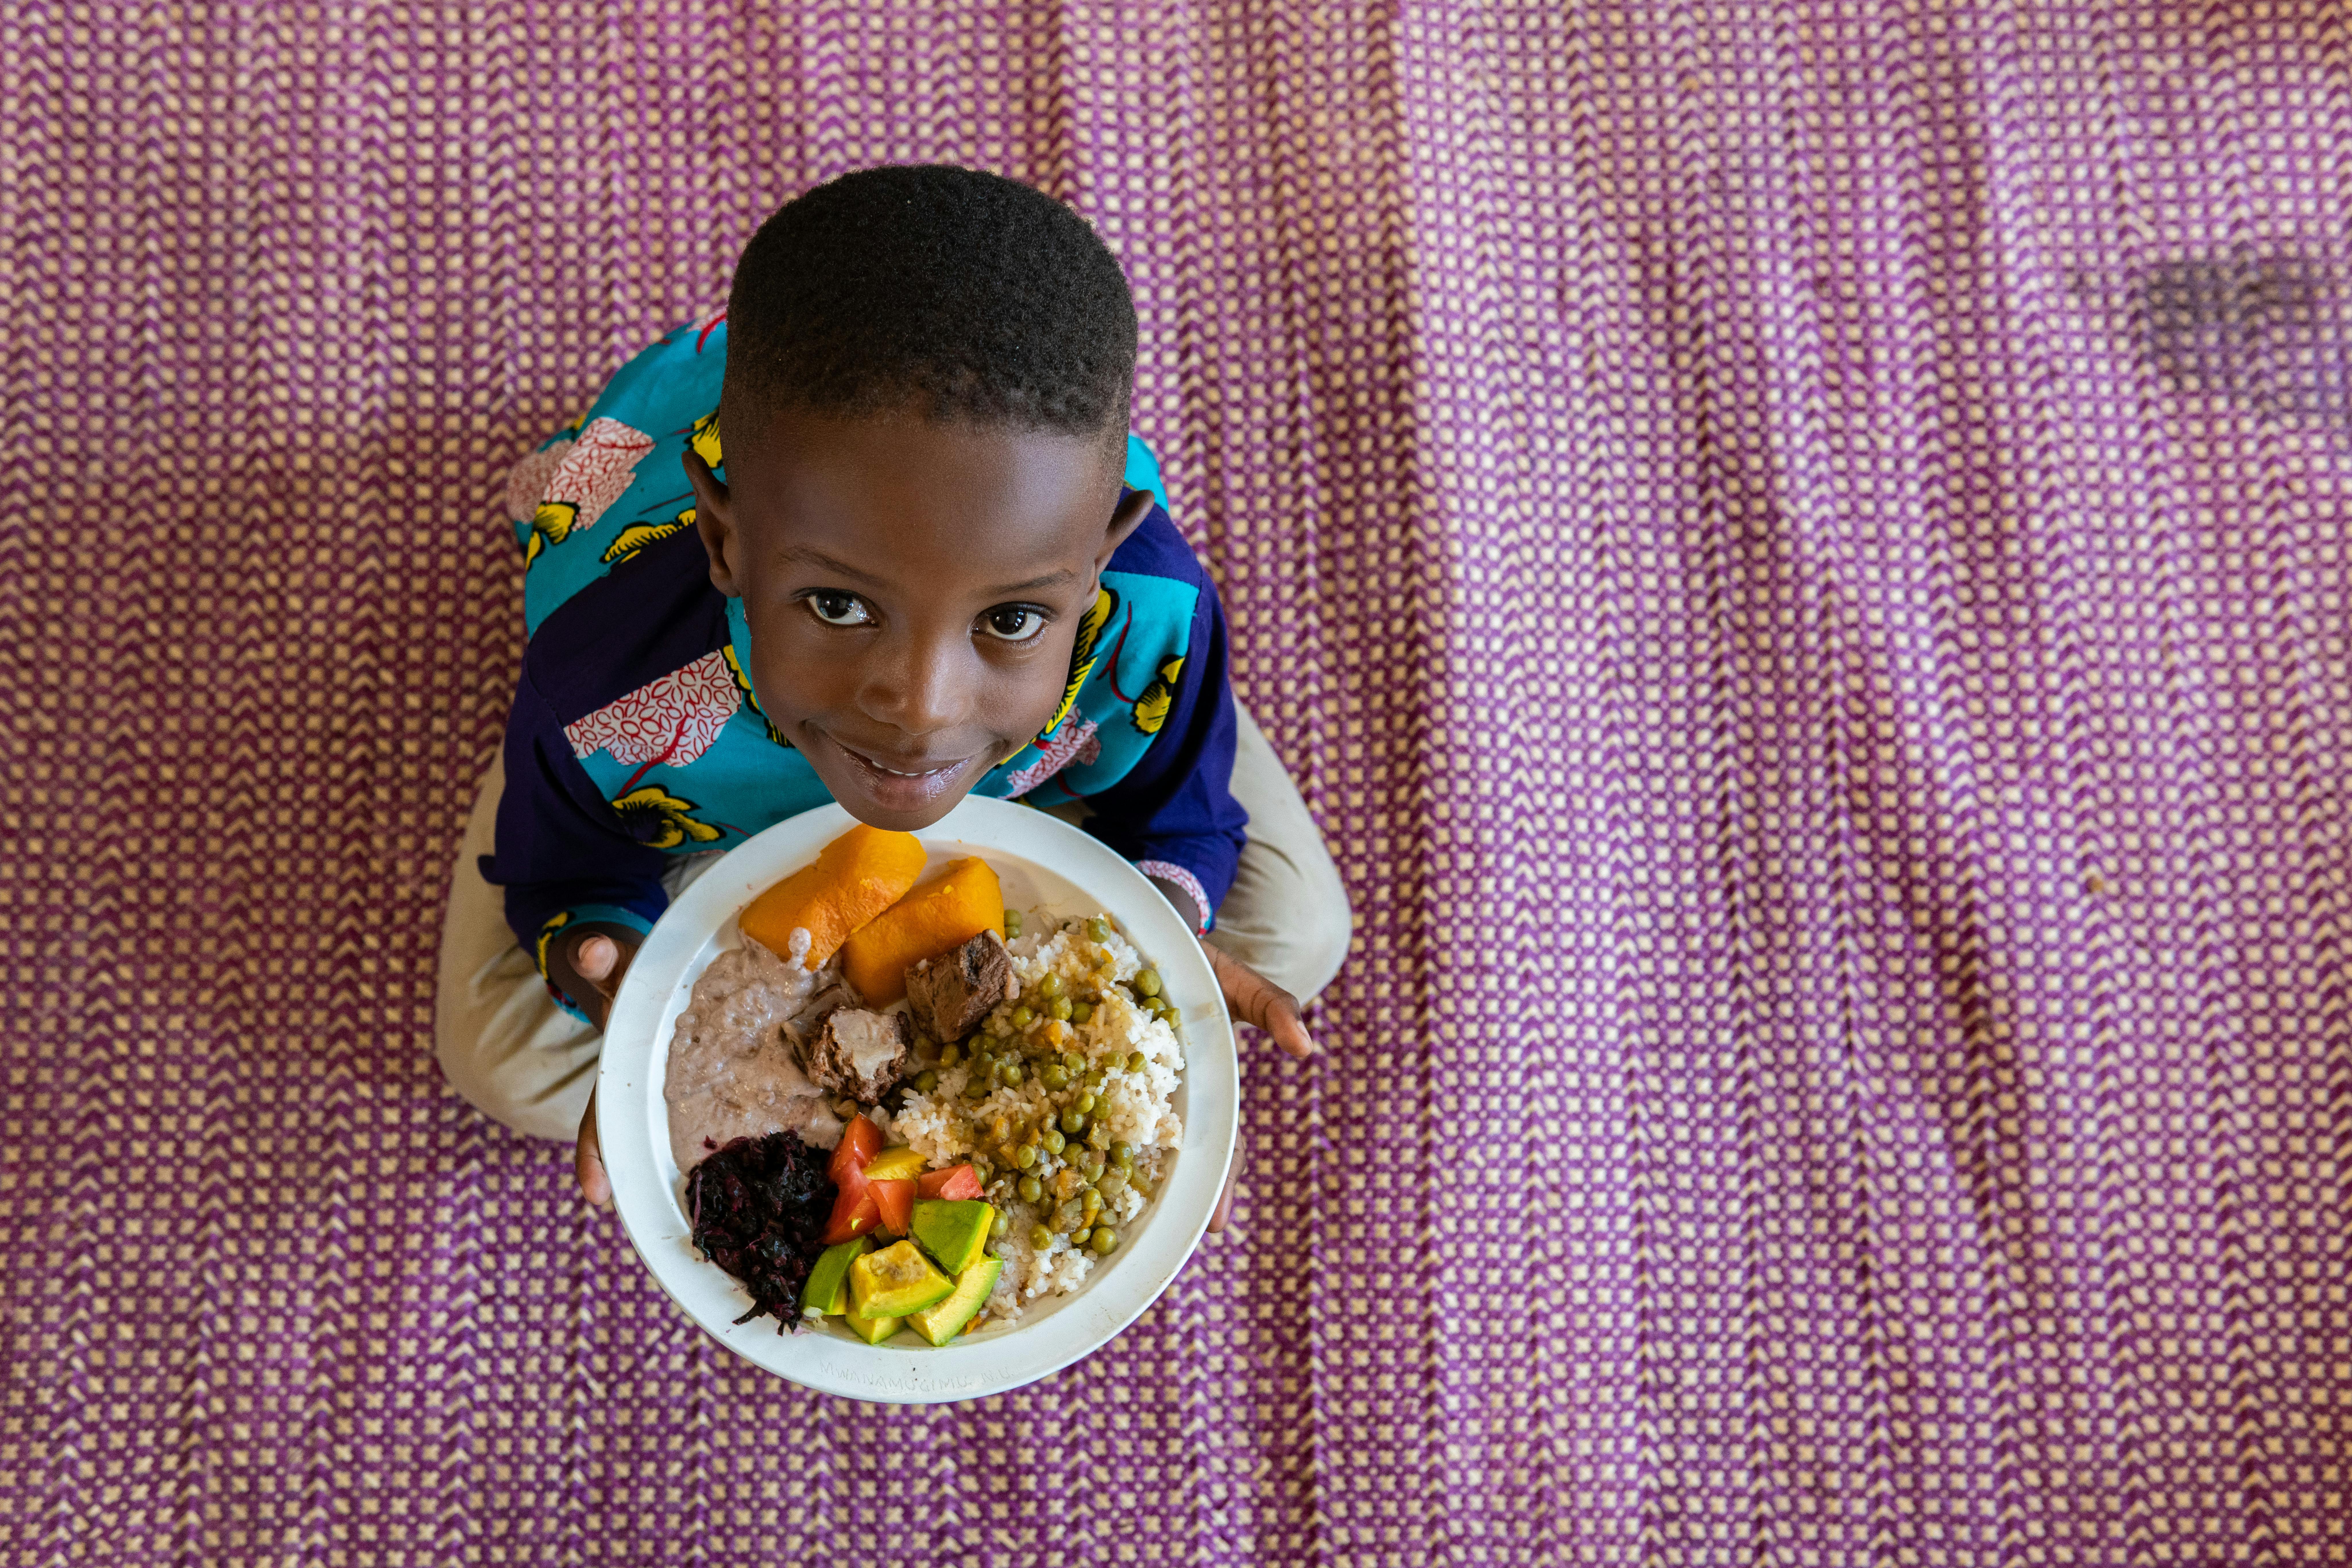 Daniel, 5 anni, vive in Uganda. Tiene in mando il suo pranzo che include zucca, riso, salsa di arachidi, verdure rosse, avocado, piselli e manzo.